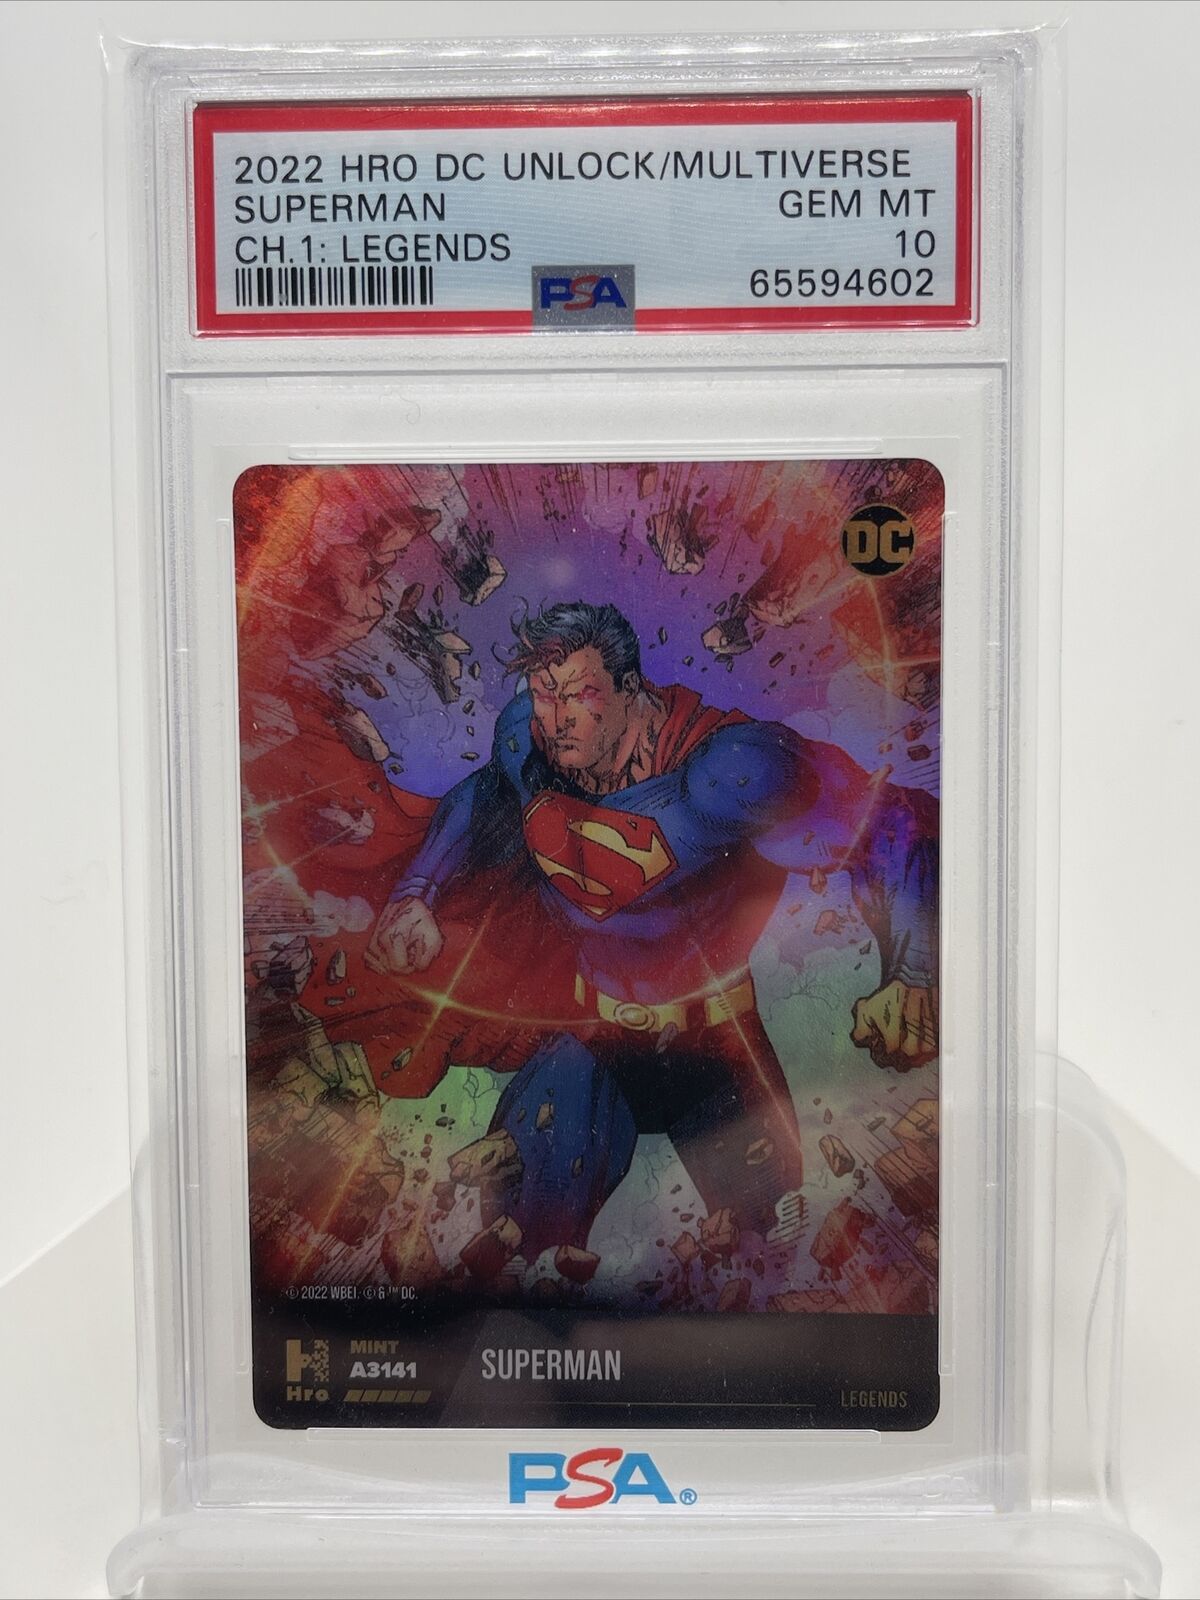 2022 DC Cards PSA 10 Gem MINT Superman Physical Only Legends Low pop